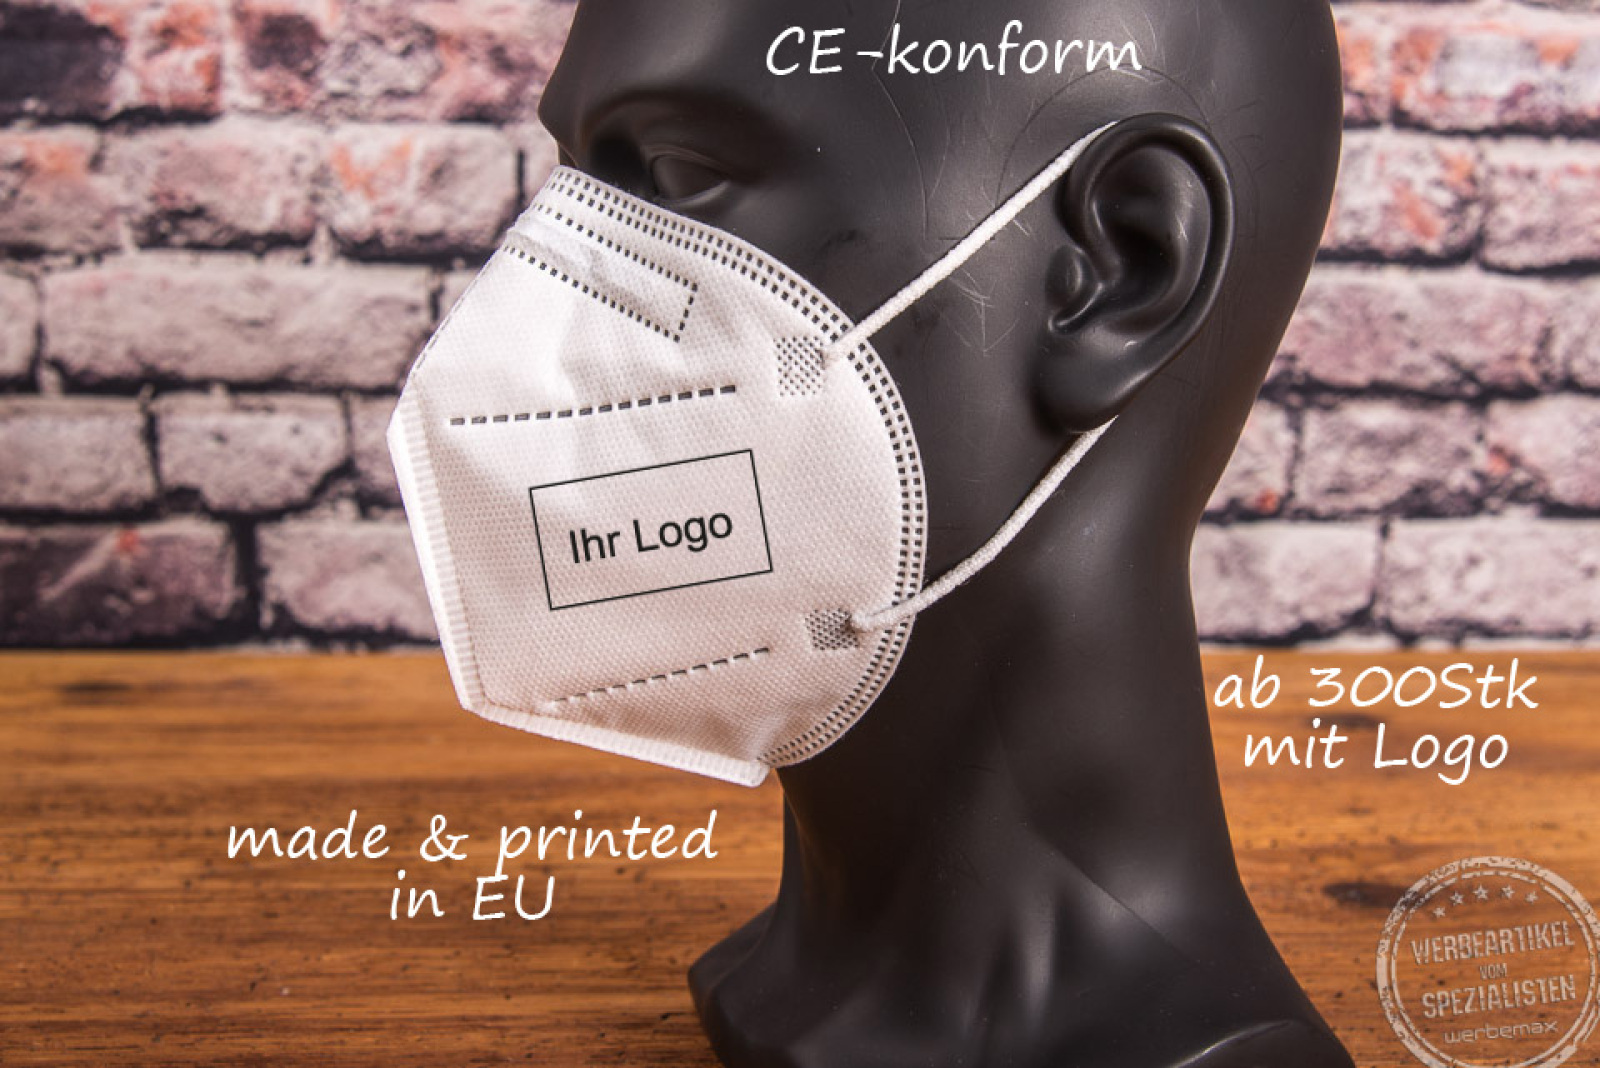 ffp2 maske in weiß CE-konform mit logo